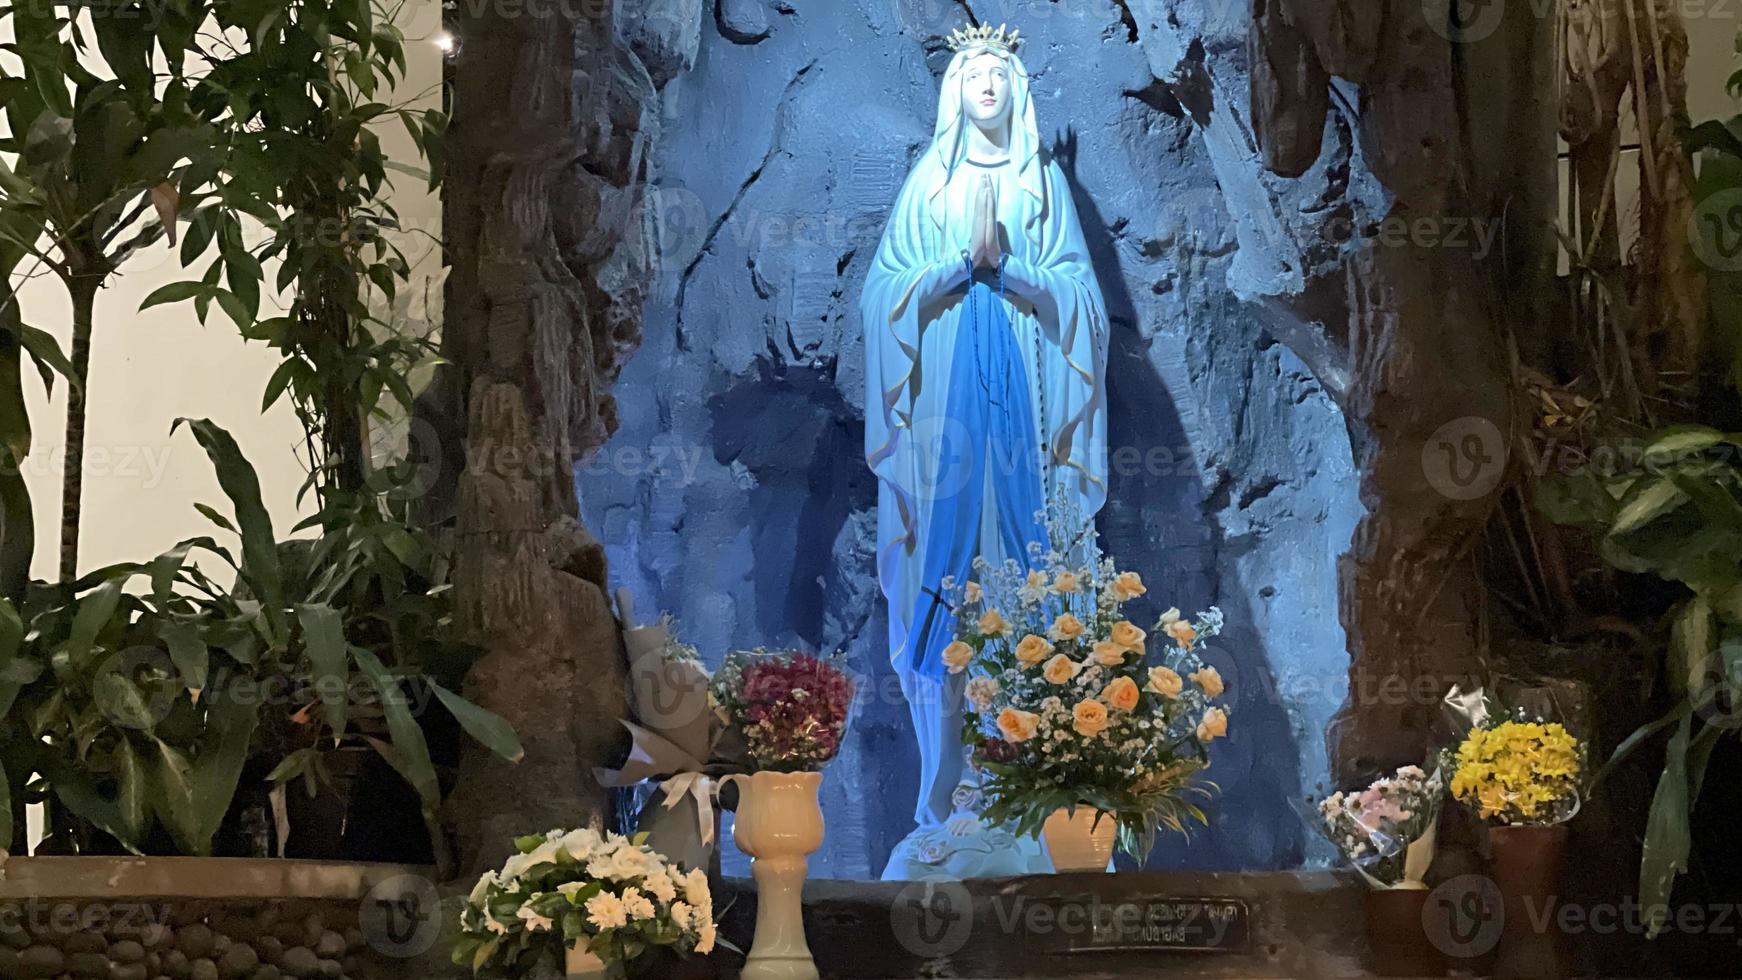 de grotta av jungfrulig Mary, staty av jungfrulig mary i en sten grotta kapell katolik kyrka med tropisk vegetation foto